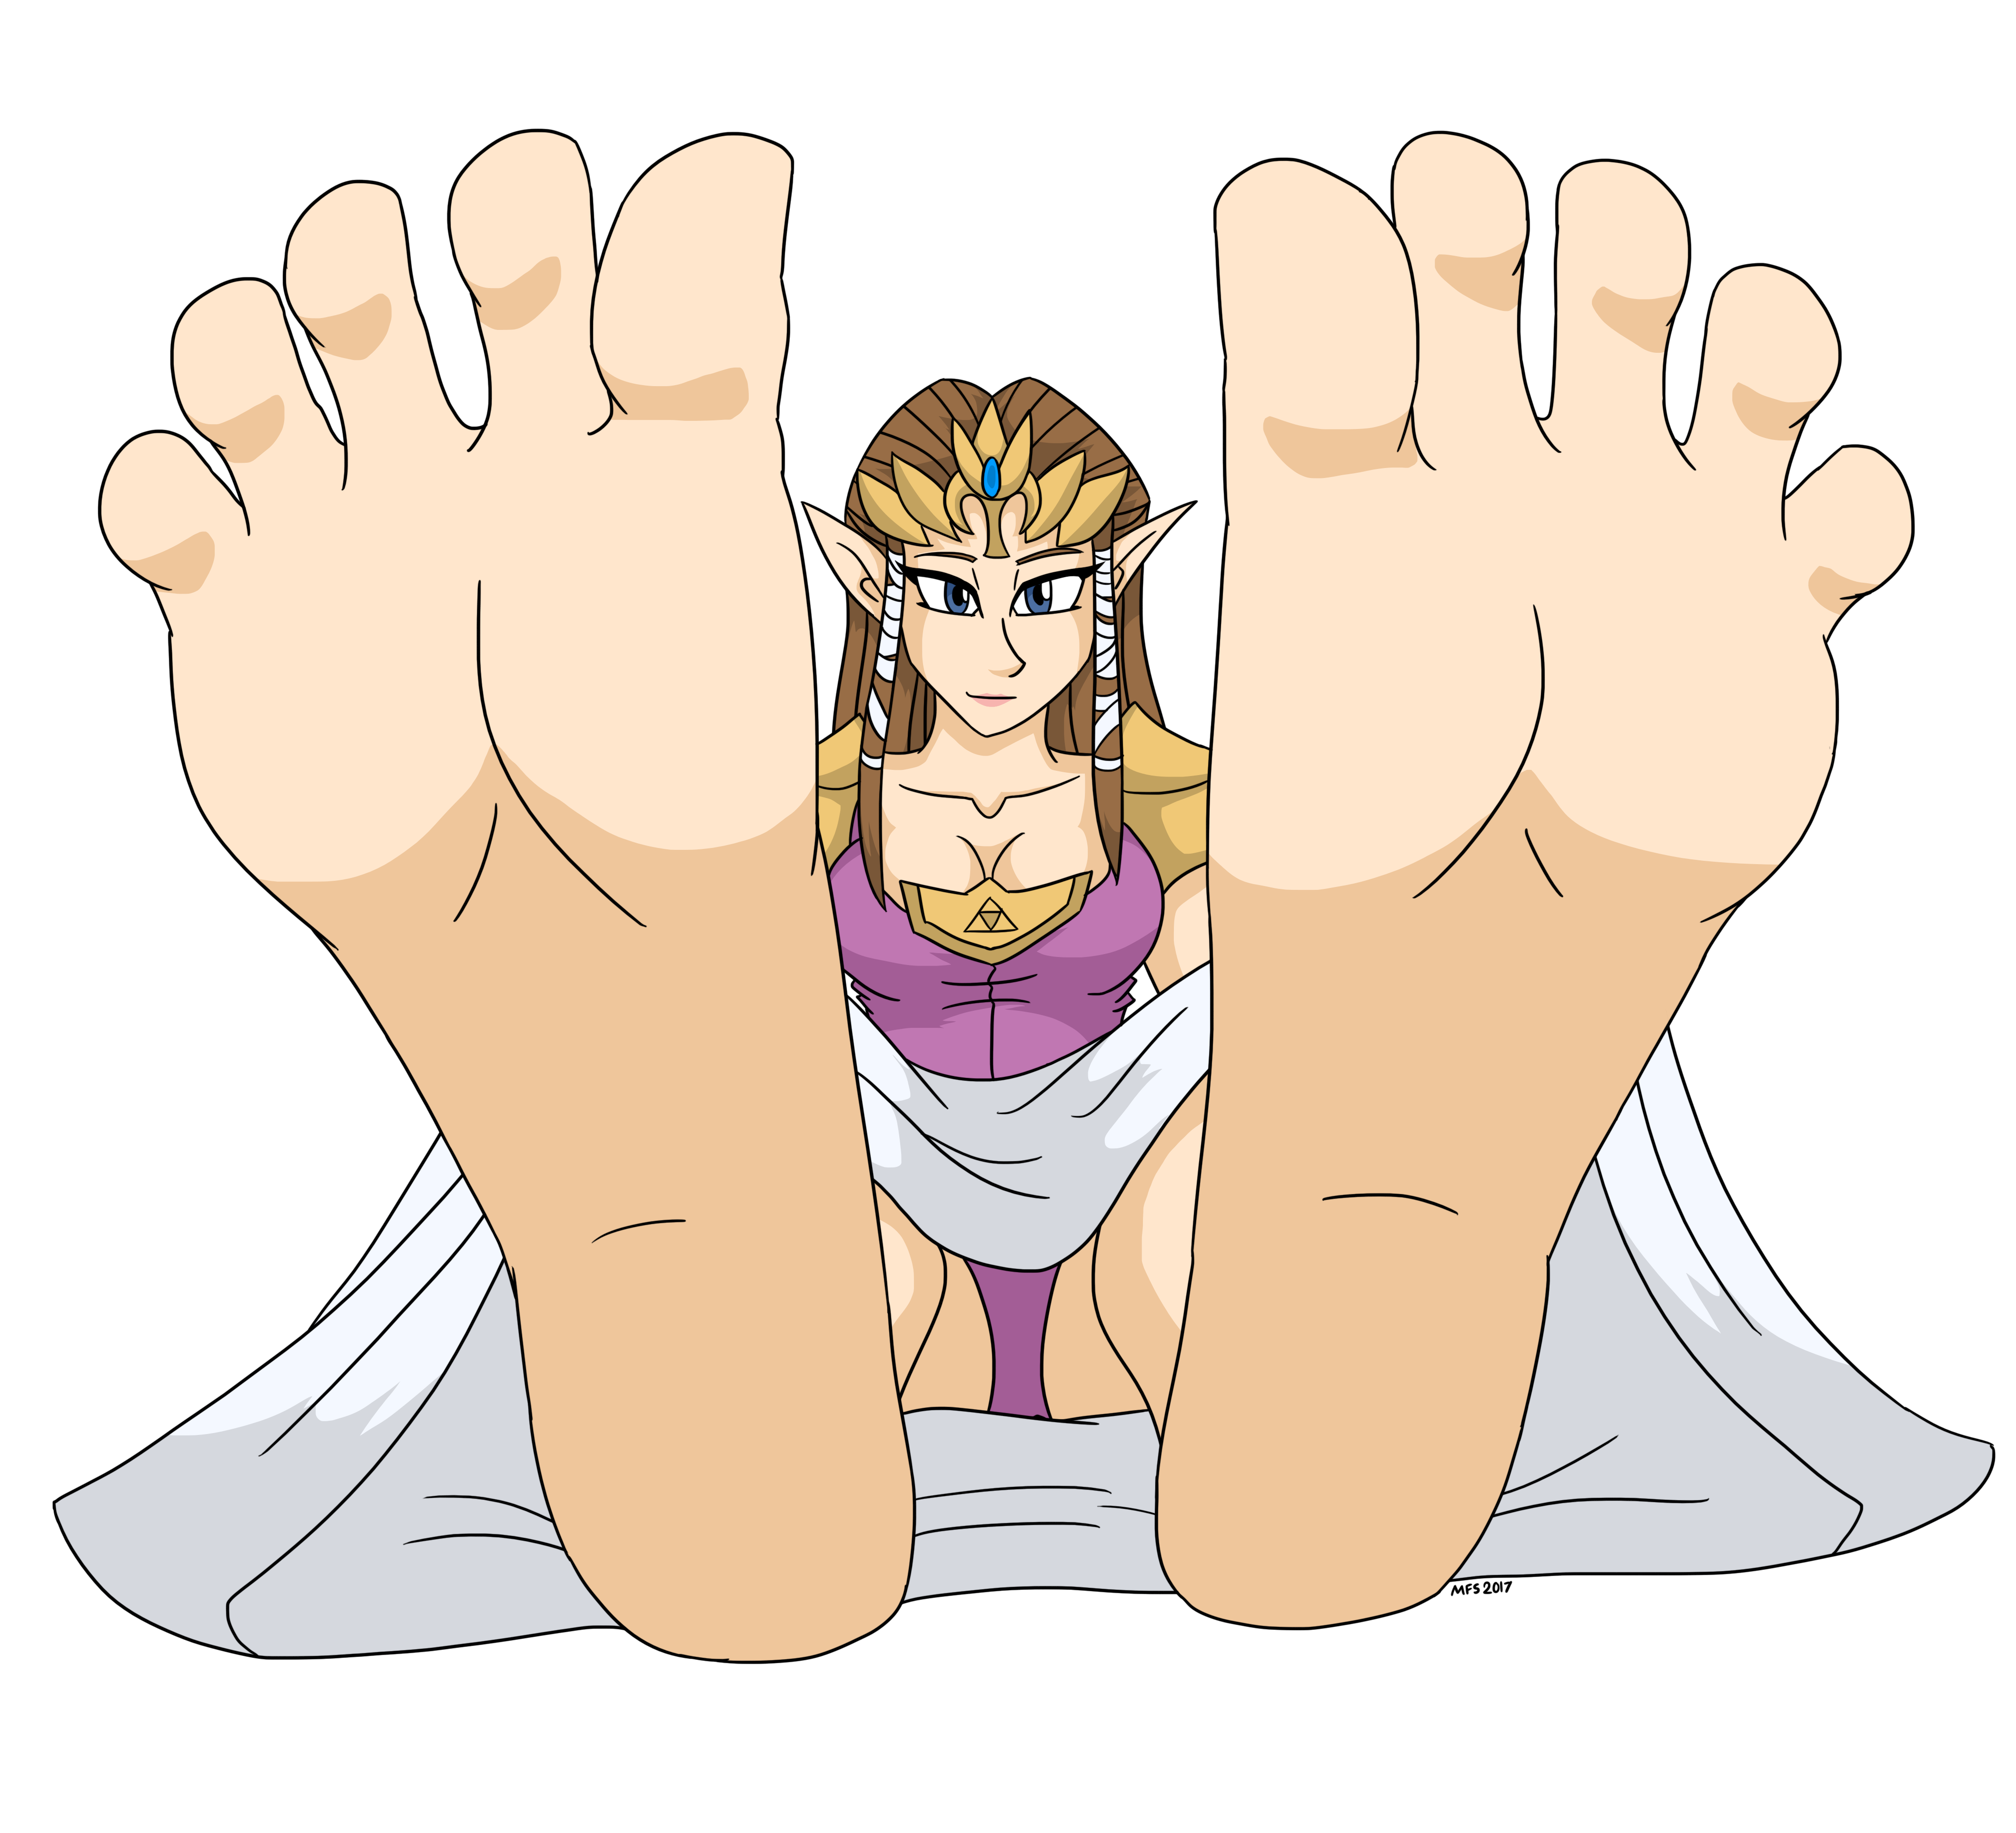 Foot fetish booru